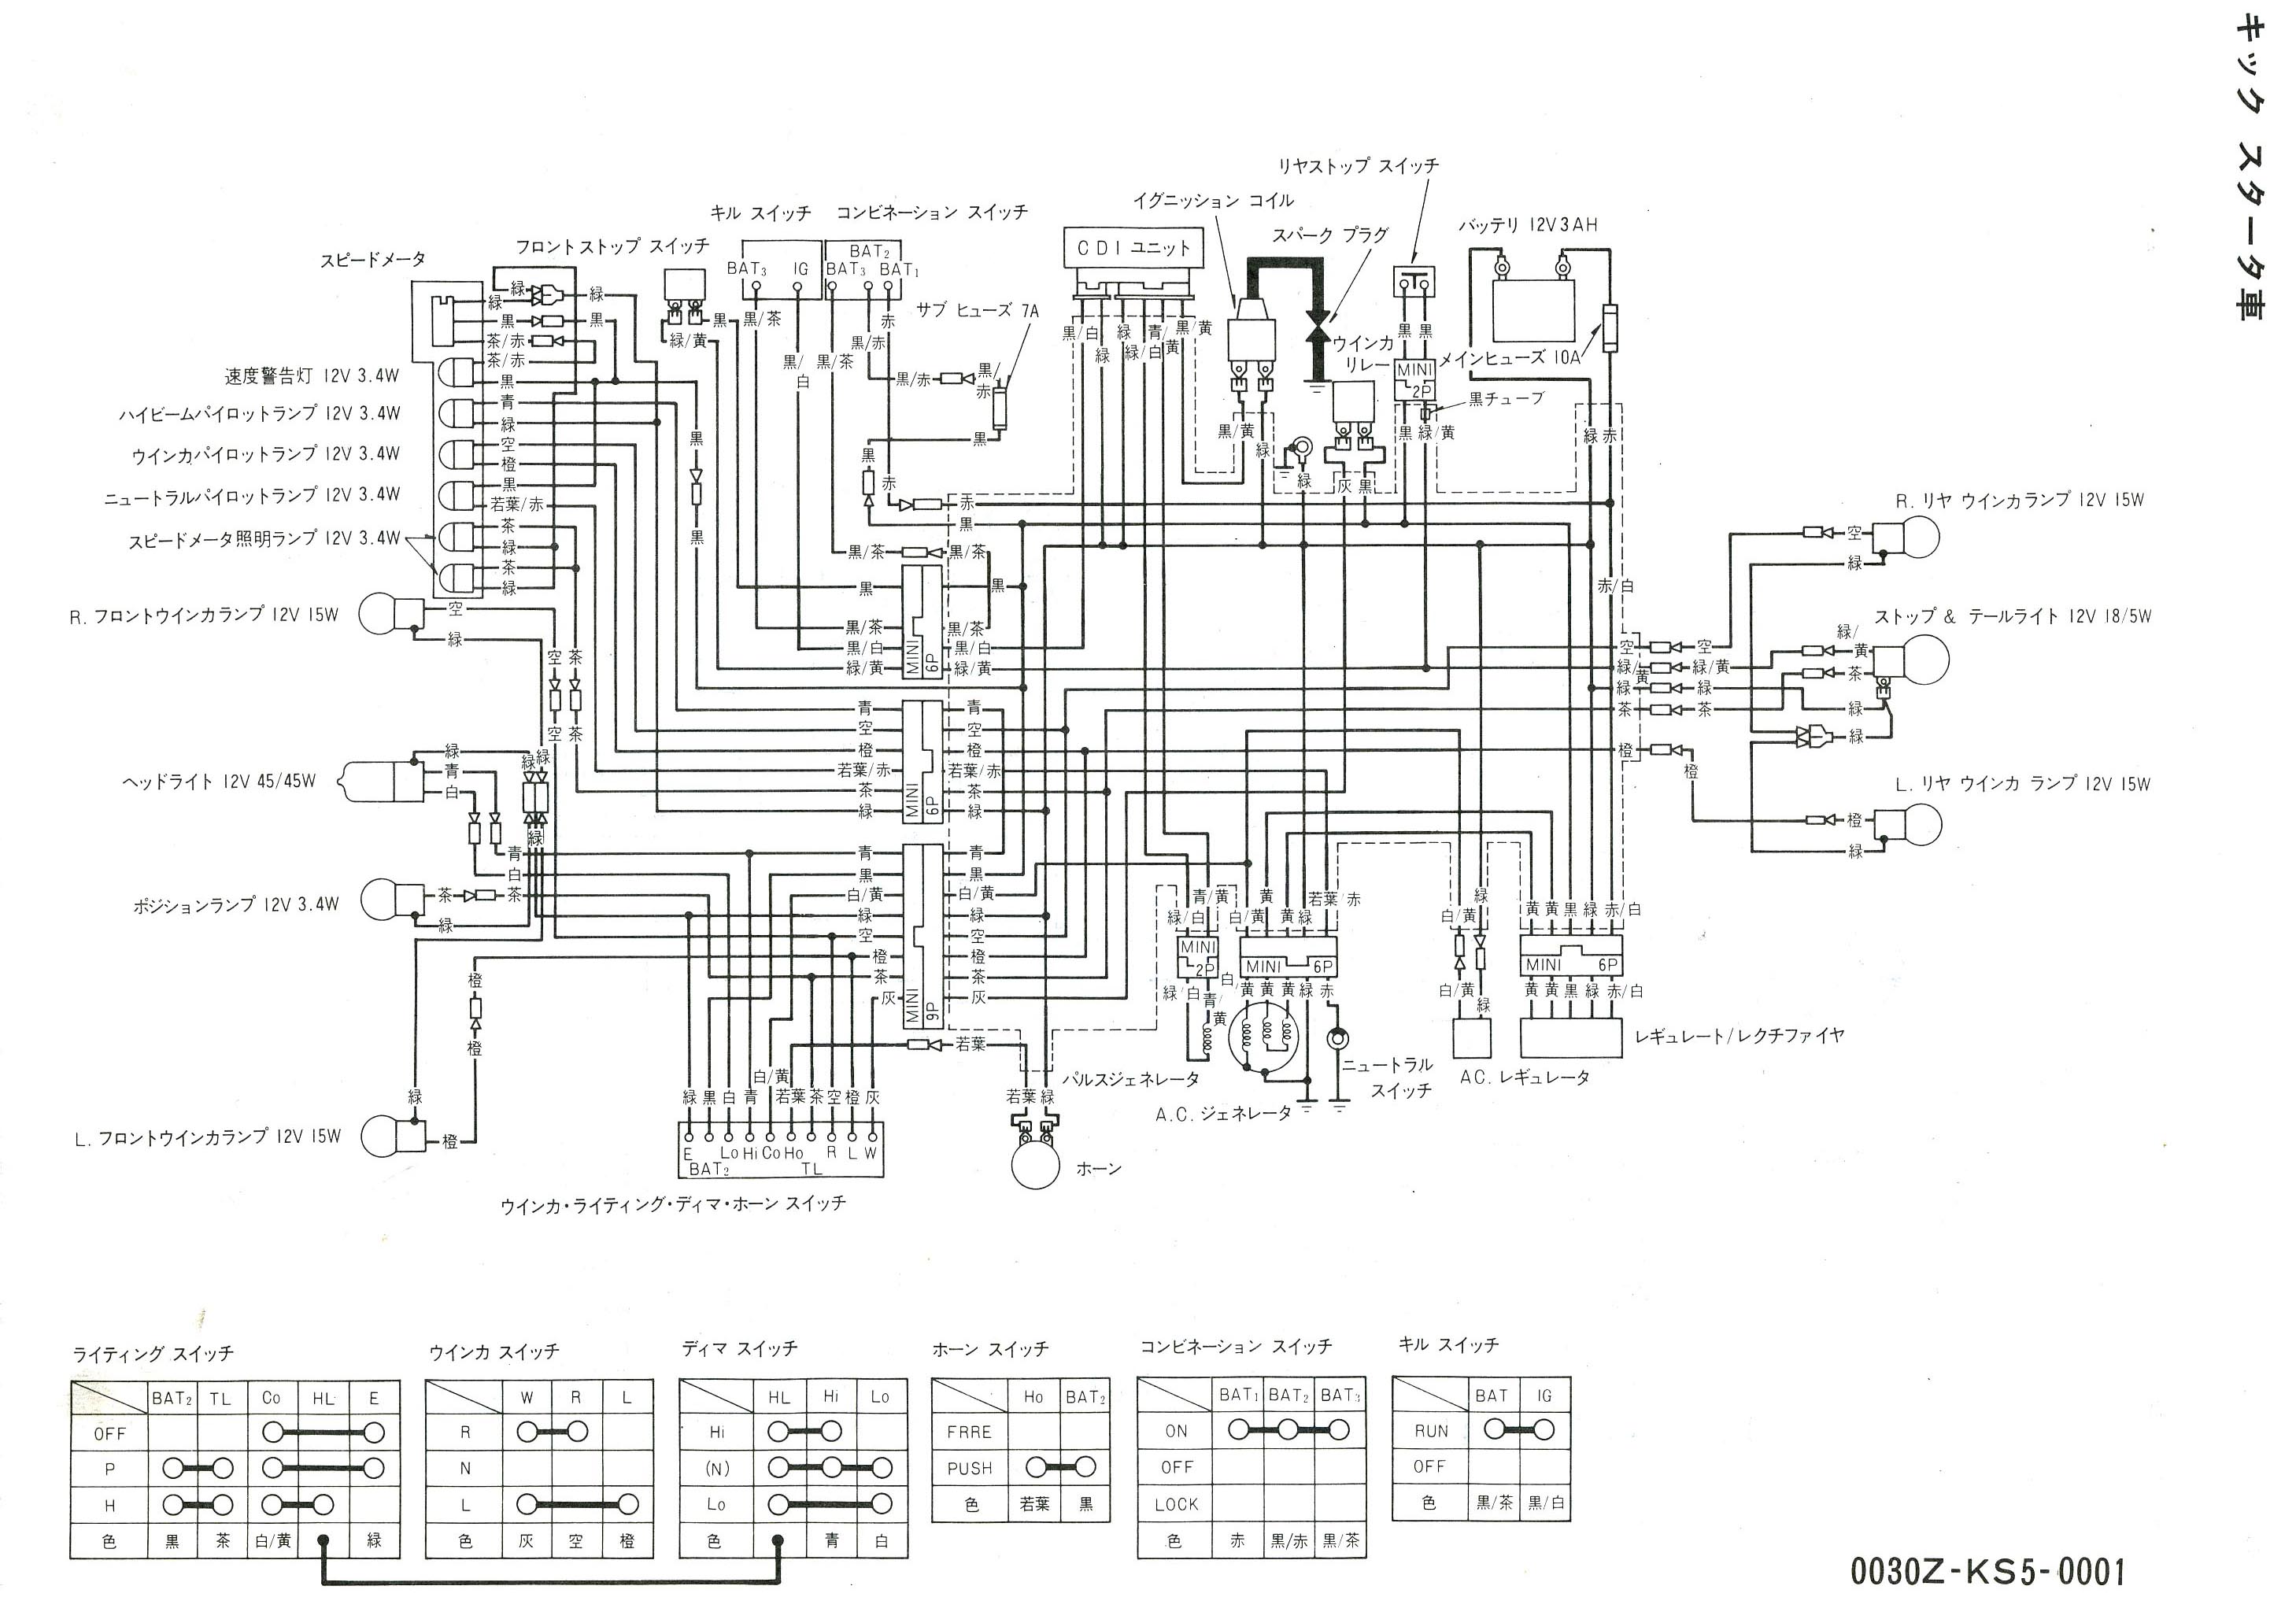 sensi wiring diagram